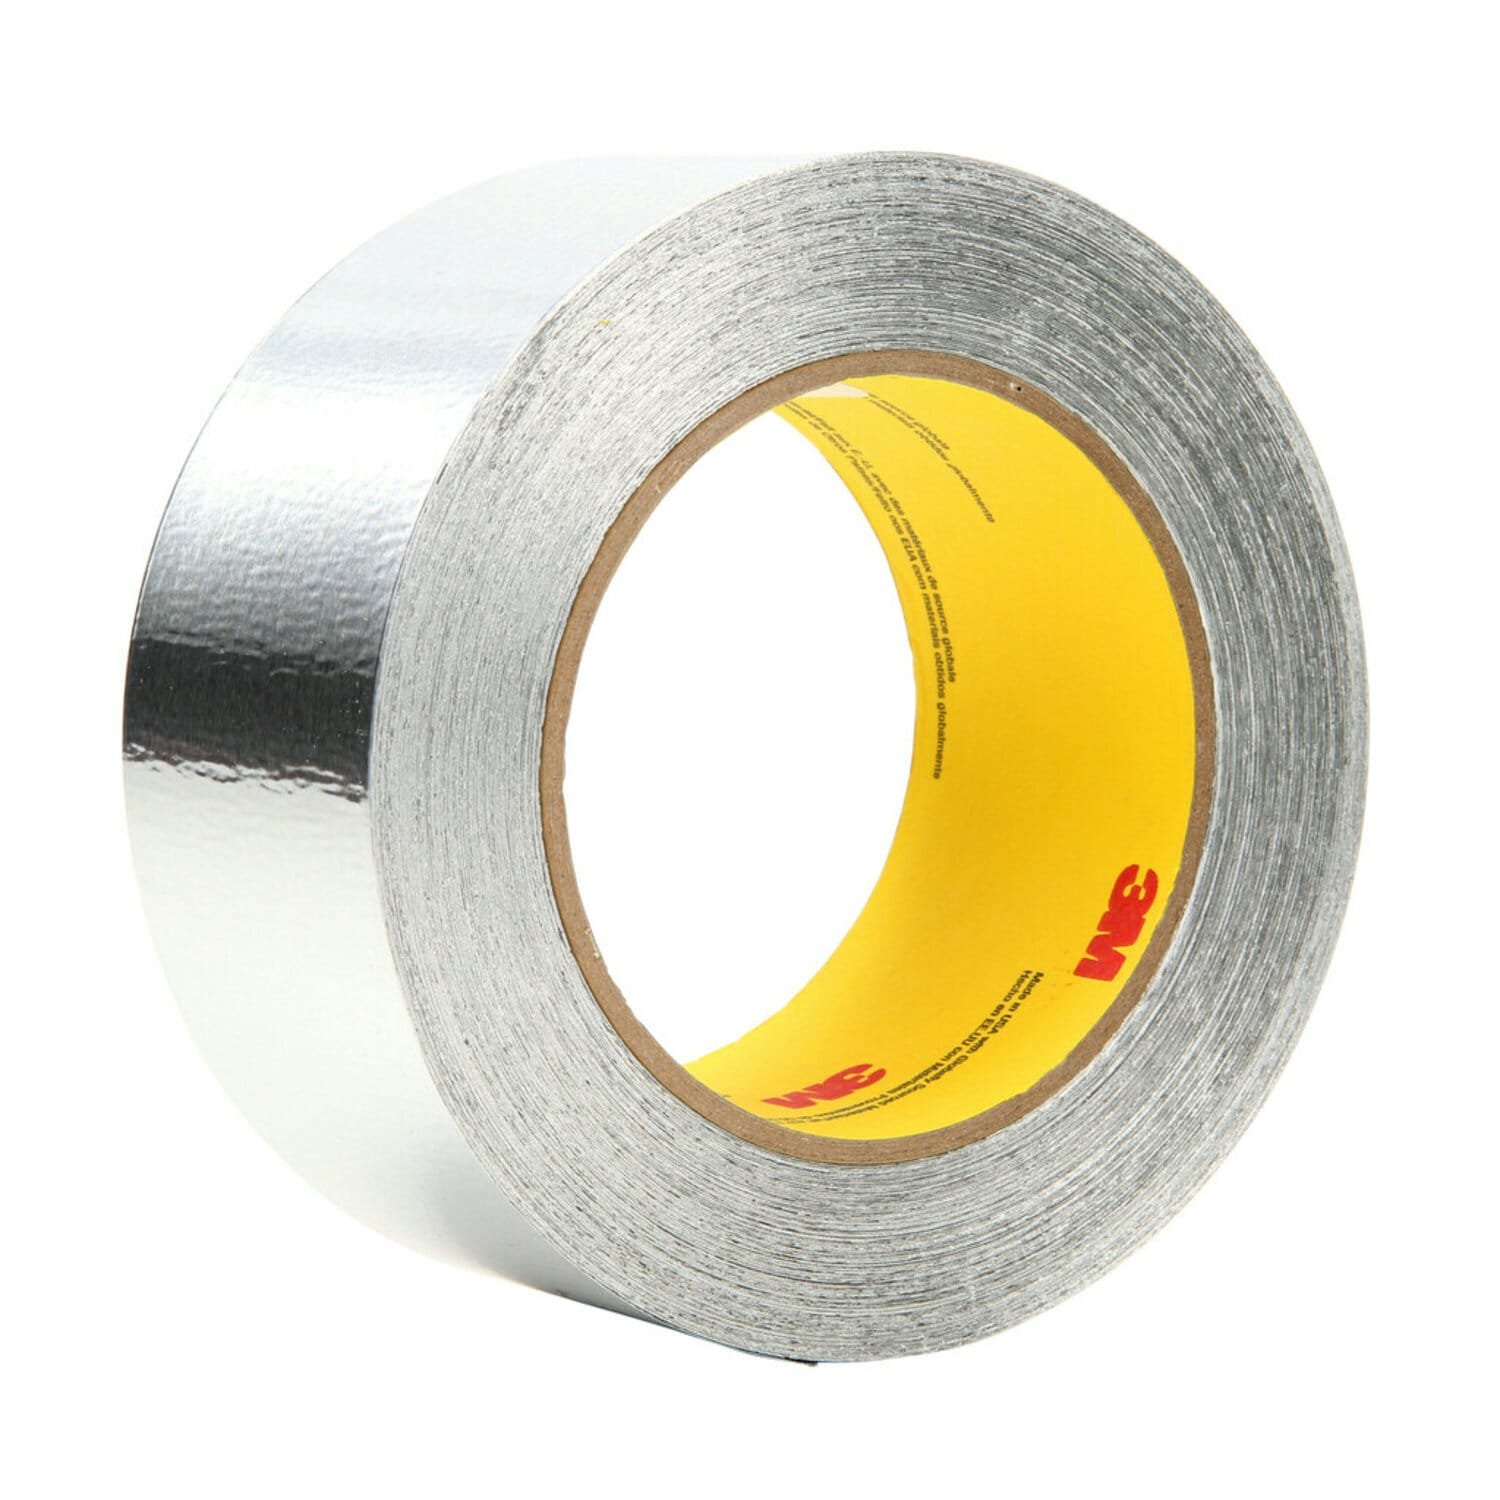 7010379571 - 3M Aluminum Foil Tape 425, Silver, 2 1/2 in x 60 yd, 4.6 mil, 12 rolls
per case